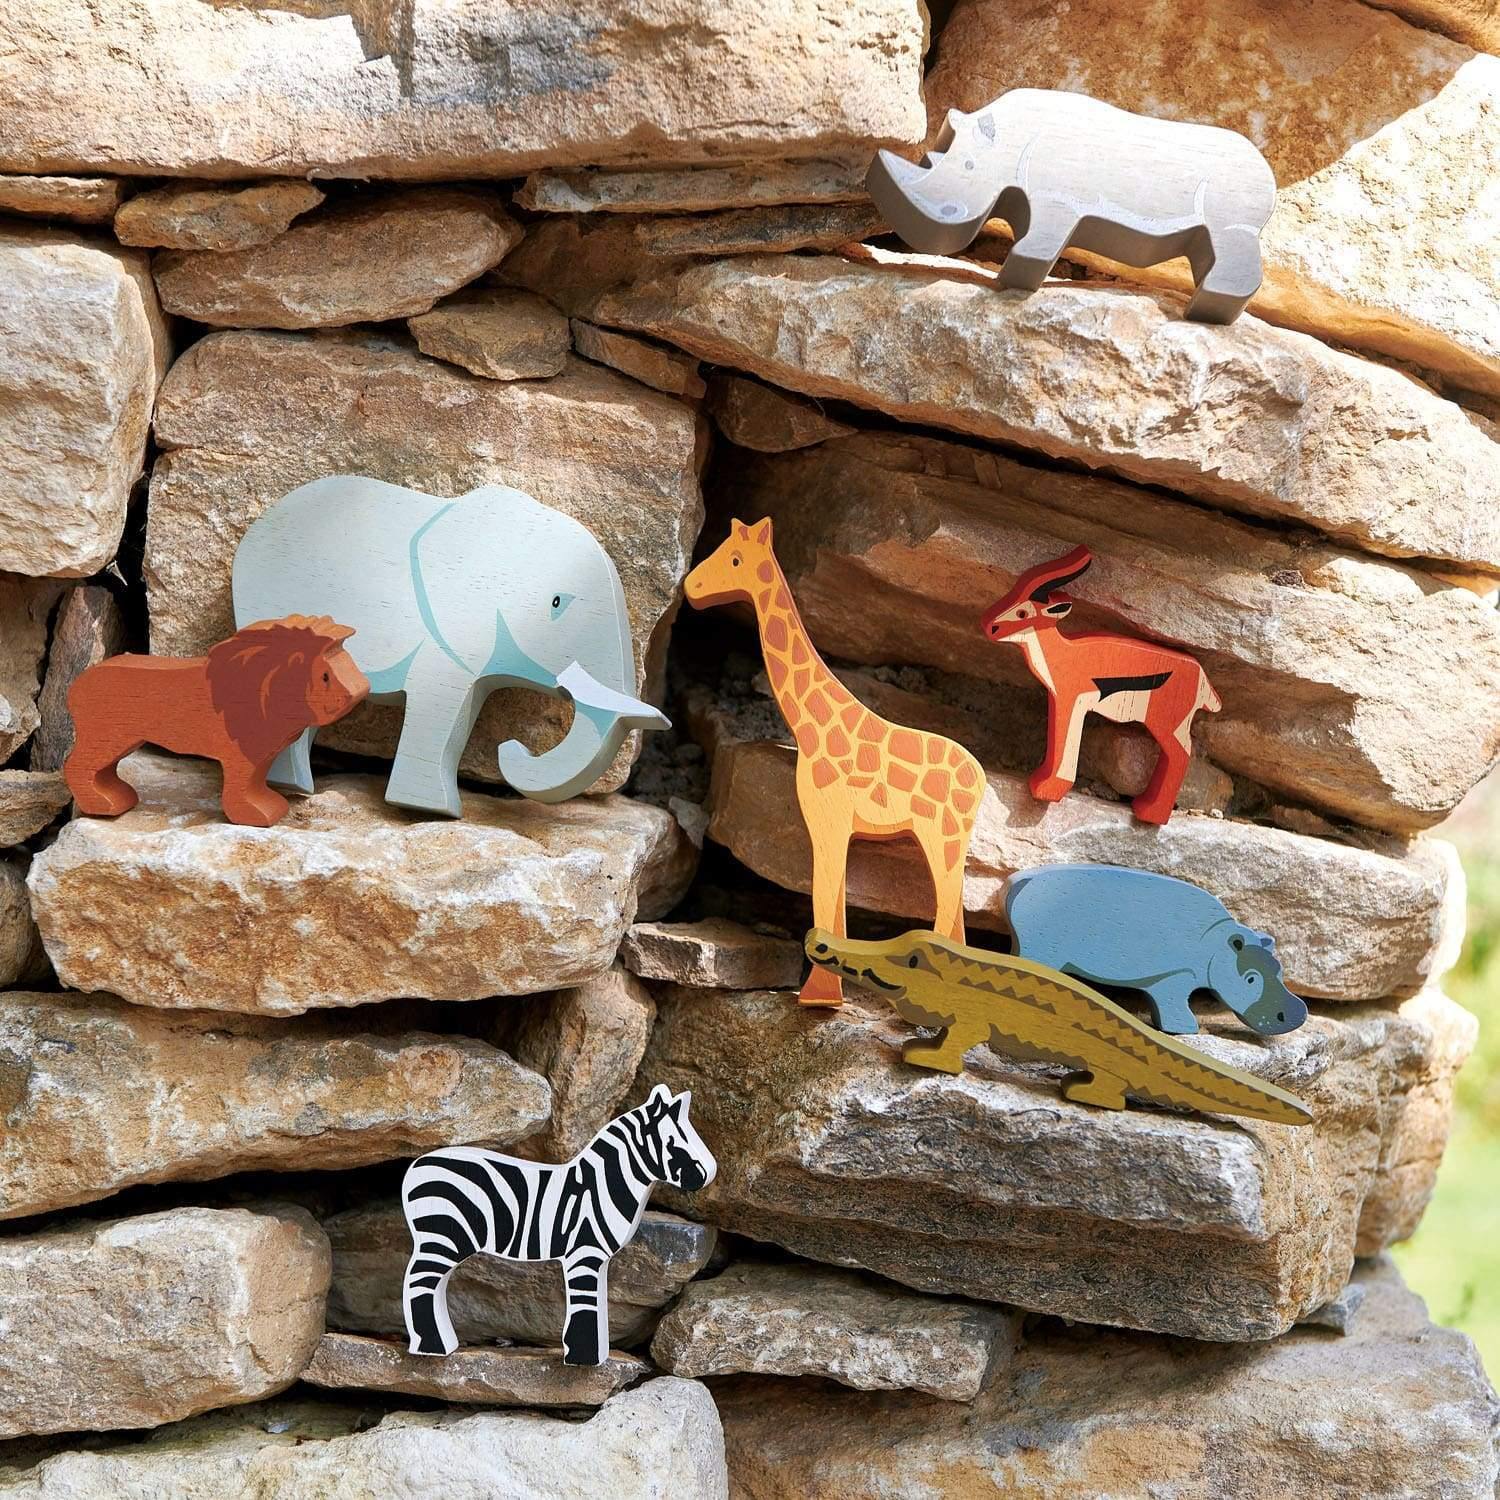 Szafari kollekció, prémium minőségű fából - Safari Collection - 8 darab - Tender Leaf Toys-Tender Leaf Toys-2-Játszma.ro - A maradandó élmények boltja